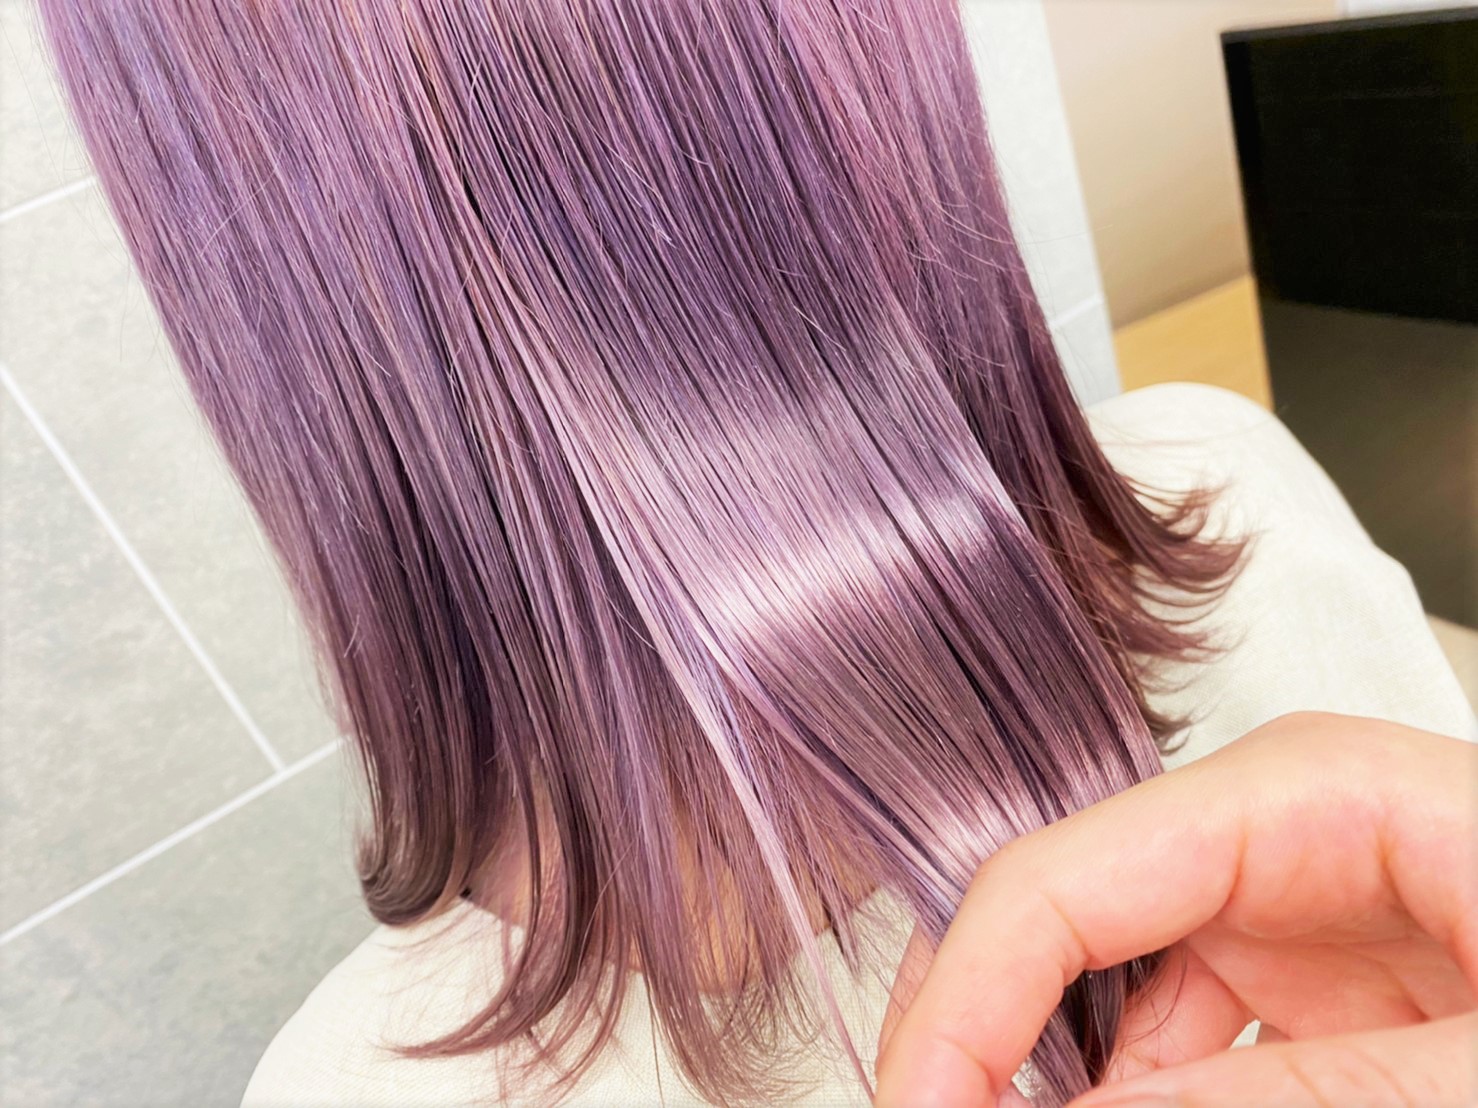 首が隠れる長さの薄紫色のヘアスタイル